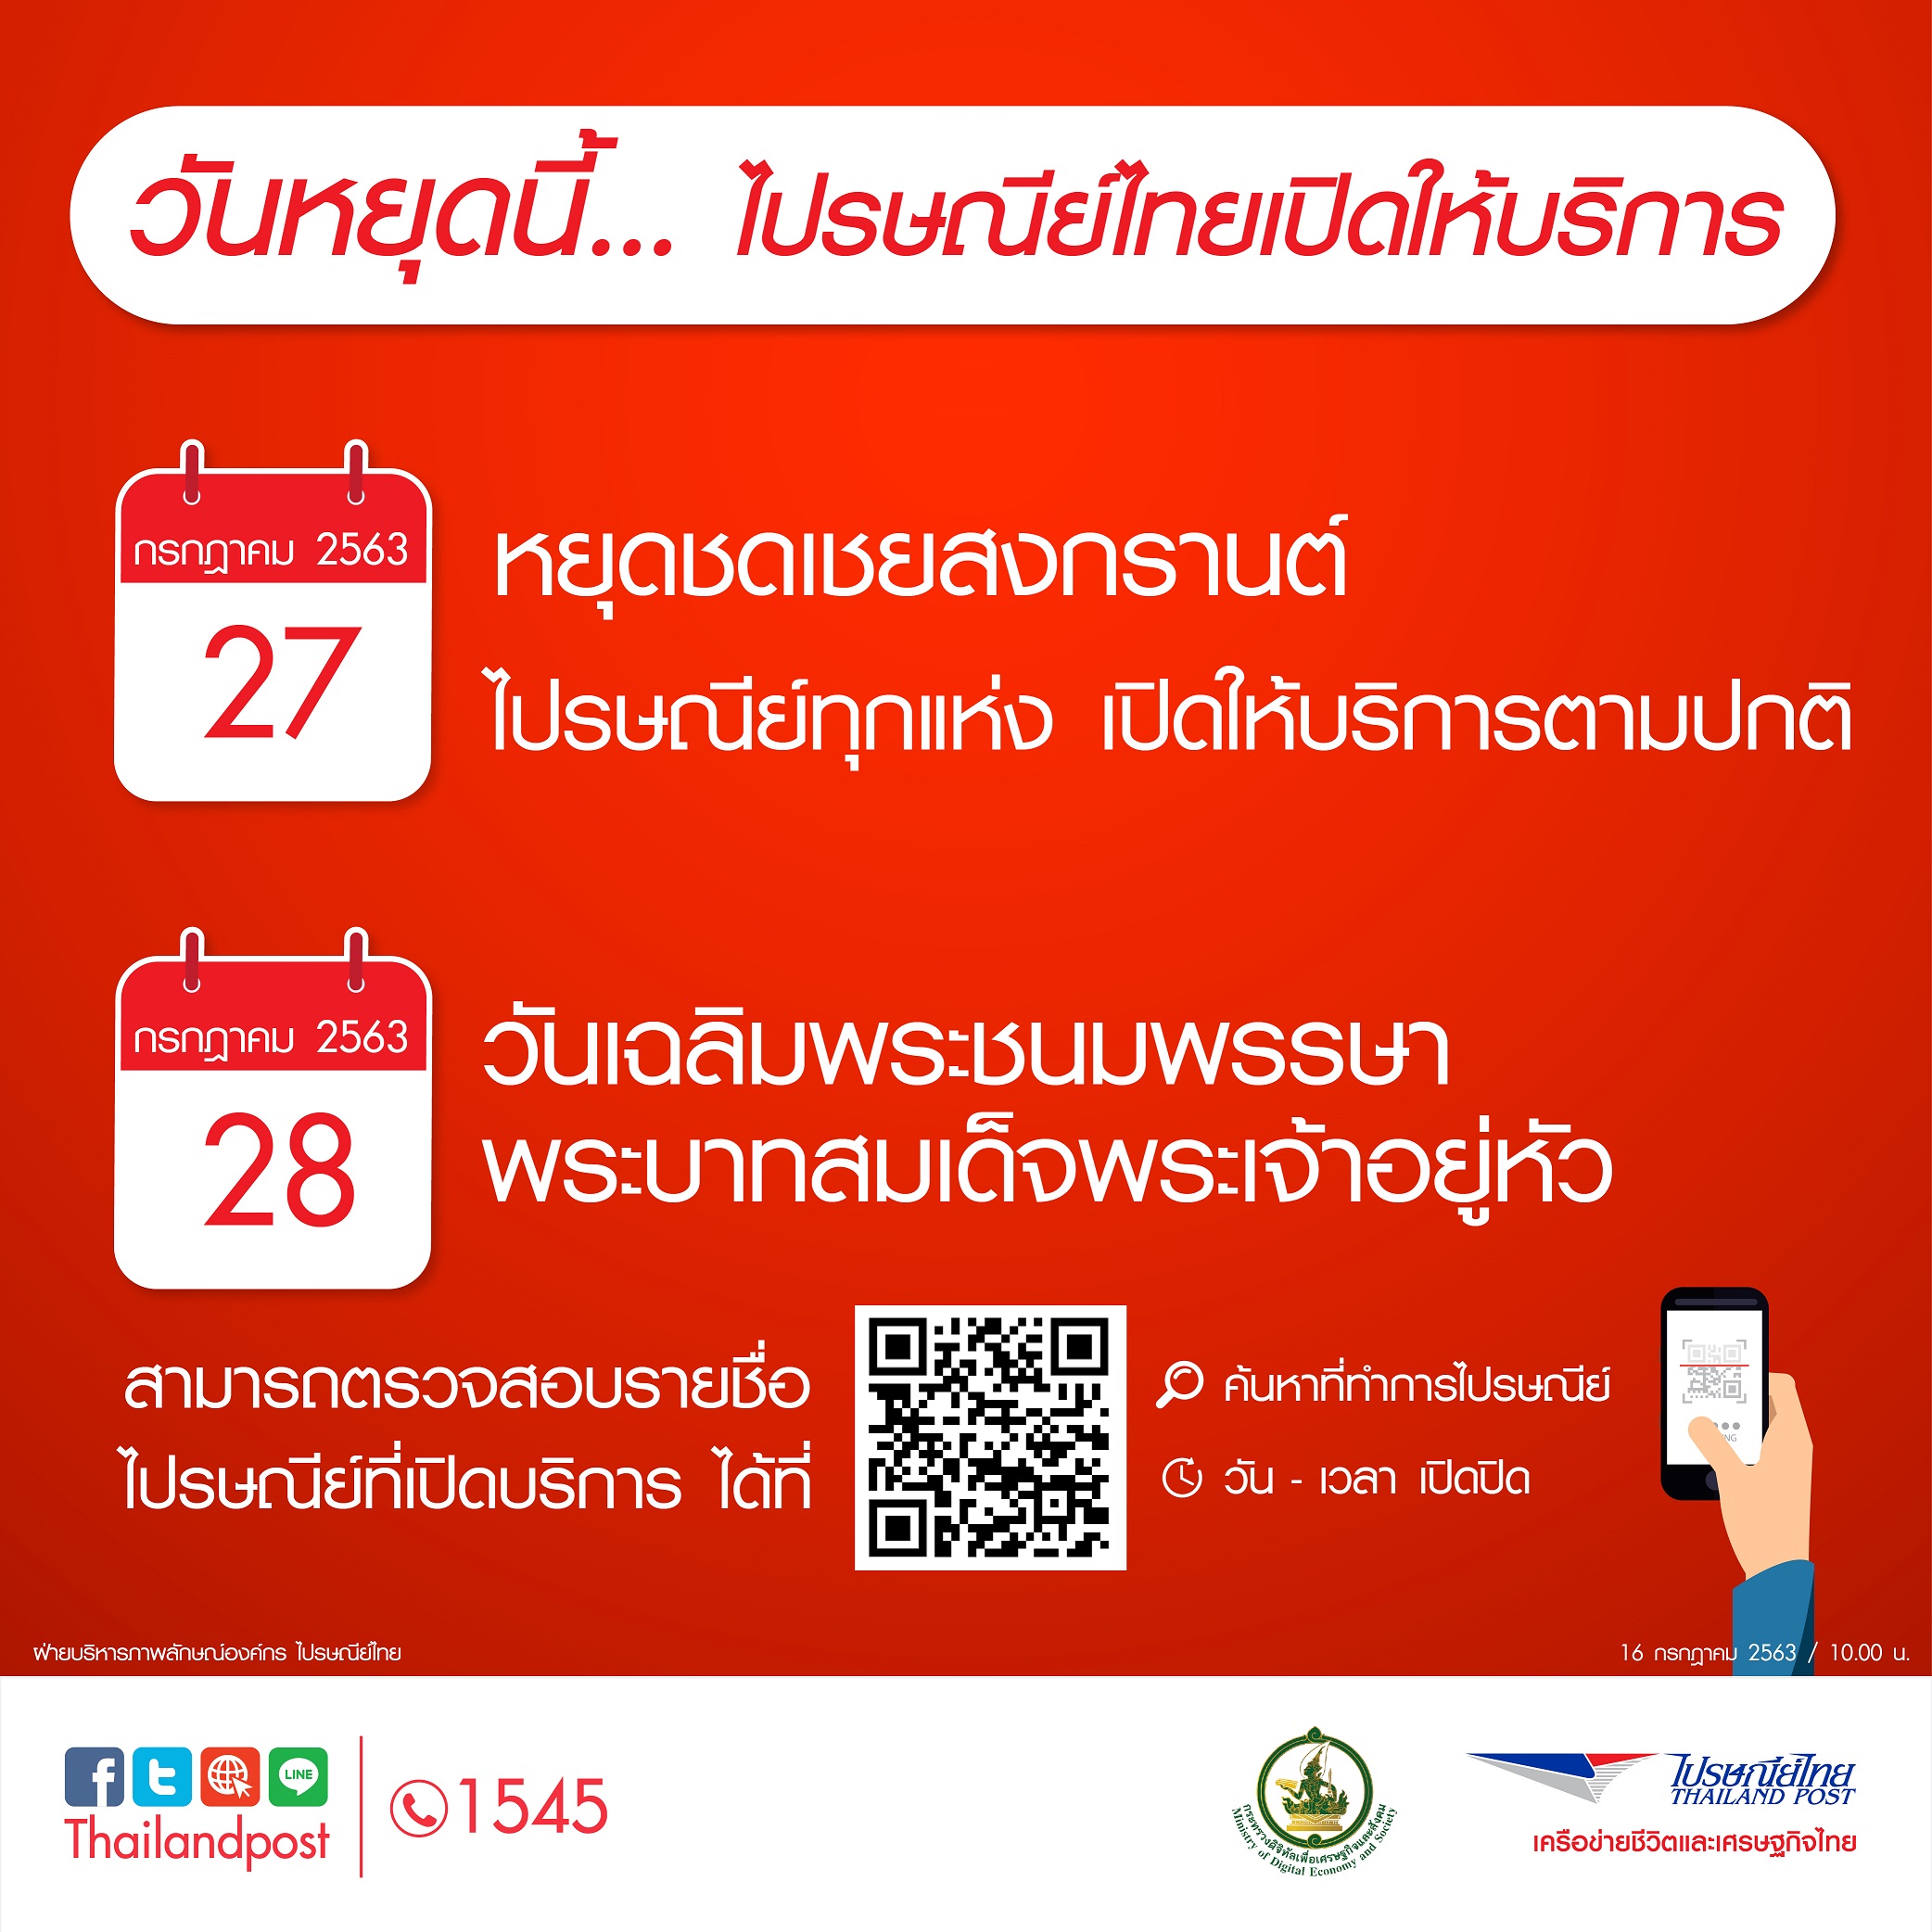 ไปรษณีย์ไทย เปิดให้บริการในวันที่ 27 - 28 กรกฎาคม 2563